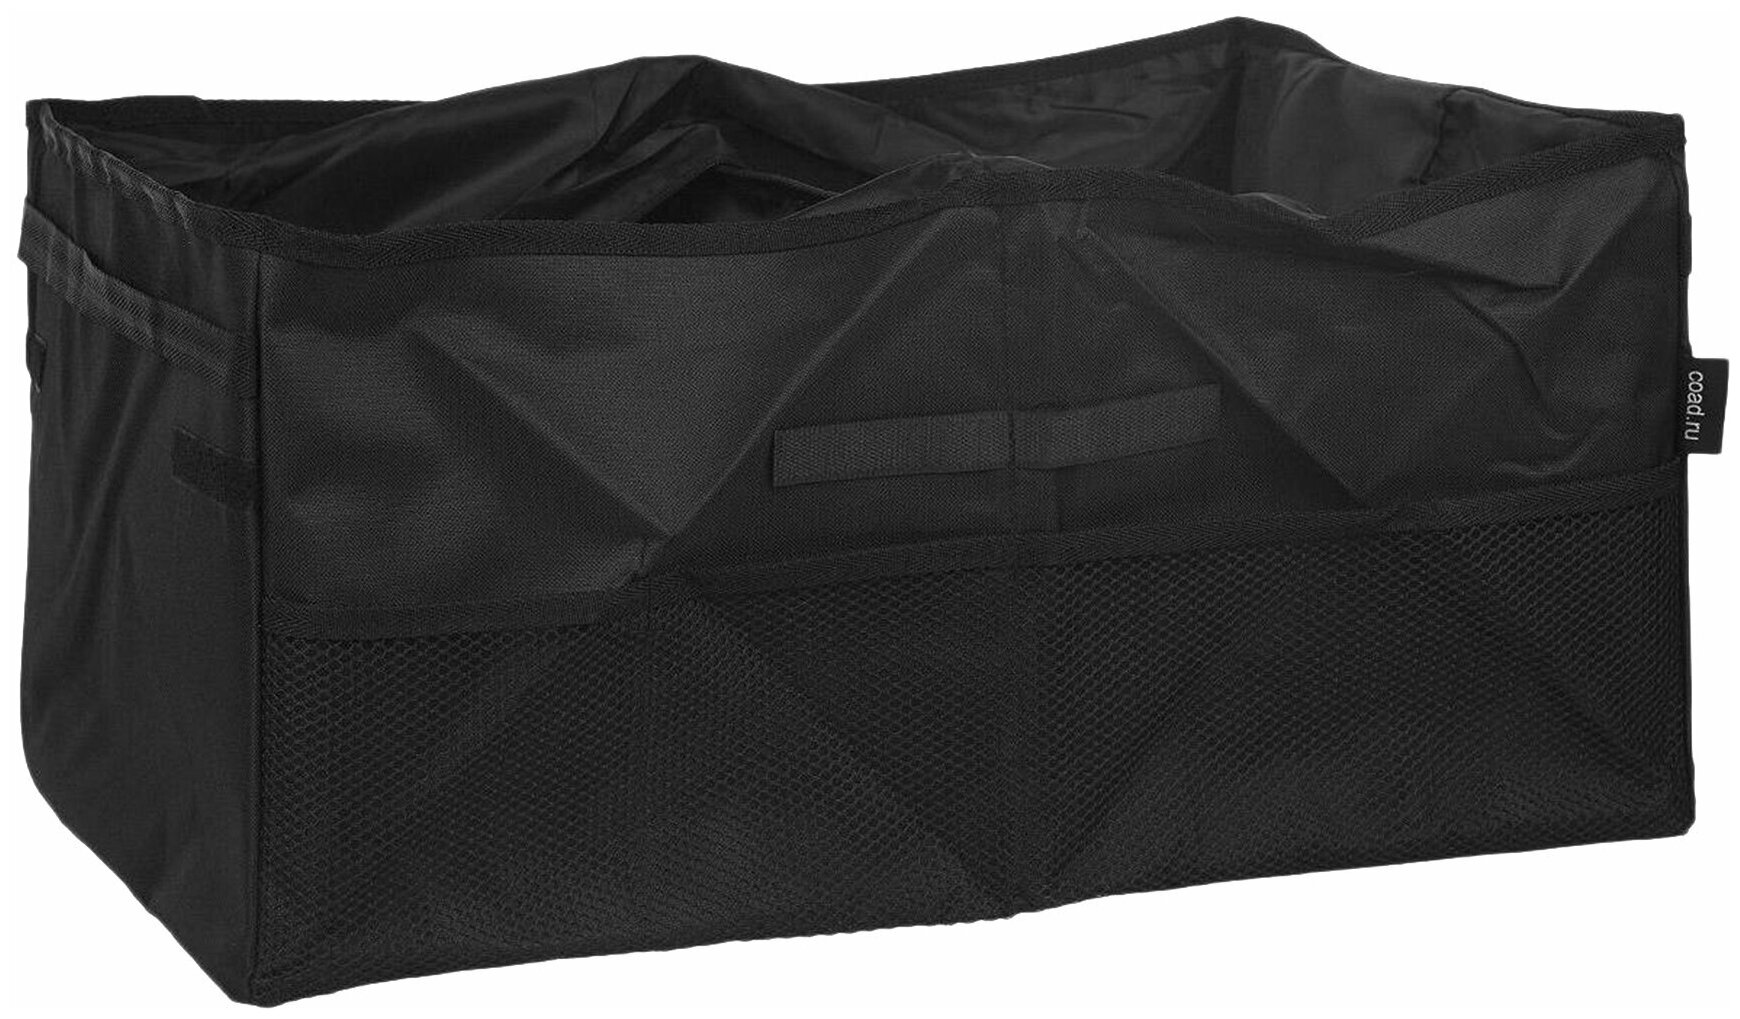 Сумка-органайзер Comfort Address Bag-027 Black складная, два отделения, 65л